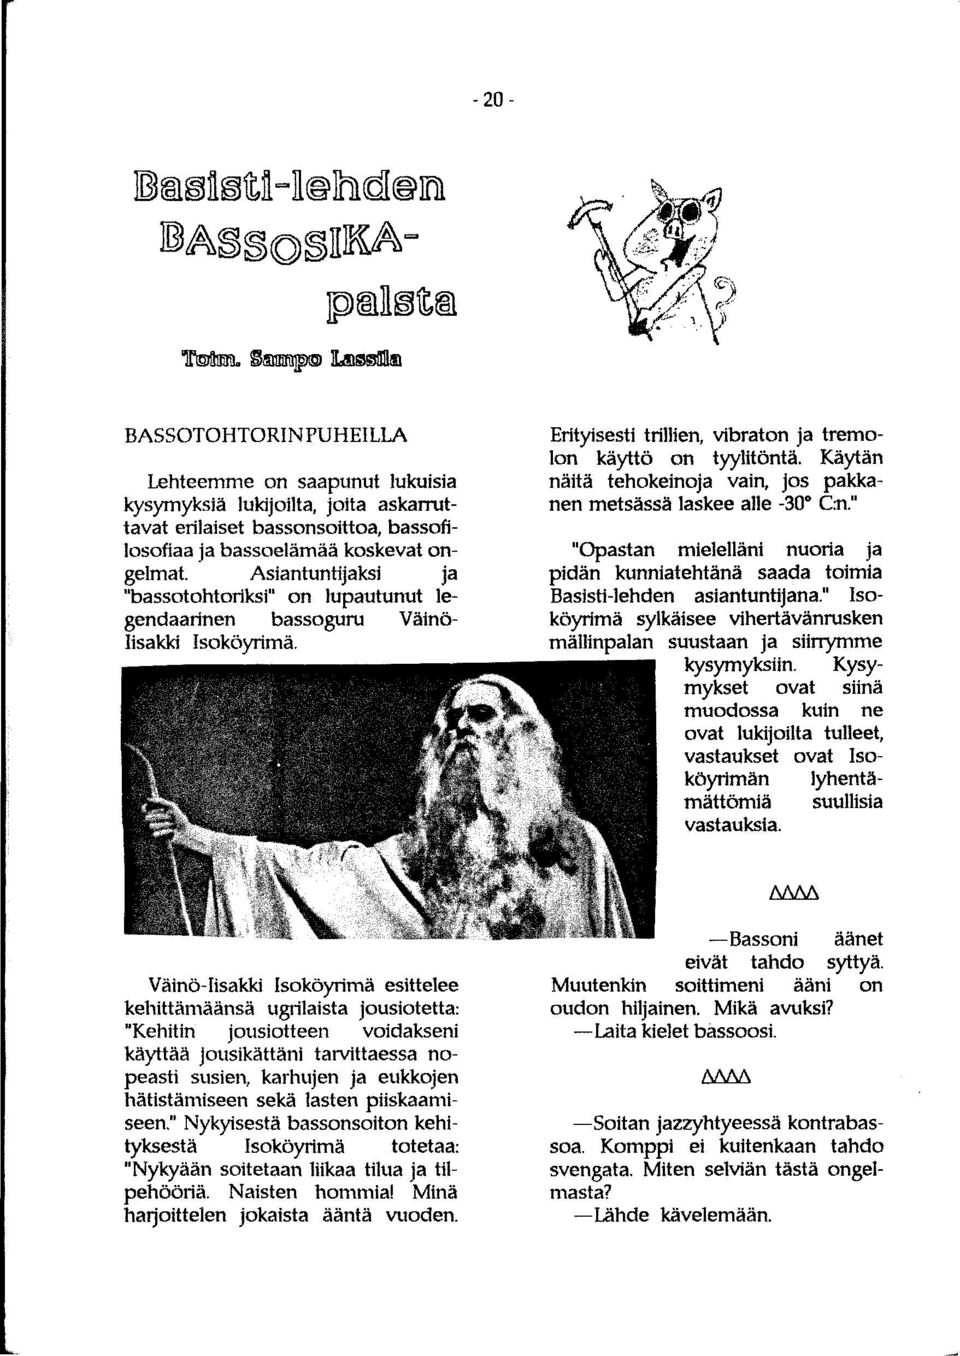 ongelmat. Asiantuntijaksi ja "bassotohtoriksi" on lupautunut legendaarinen bassoguru Väinö- Iisakki Isoköyrimä. Erityisesti trillien, vibraton ja tremolon käyttö on tyylitöntä.